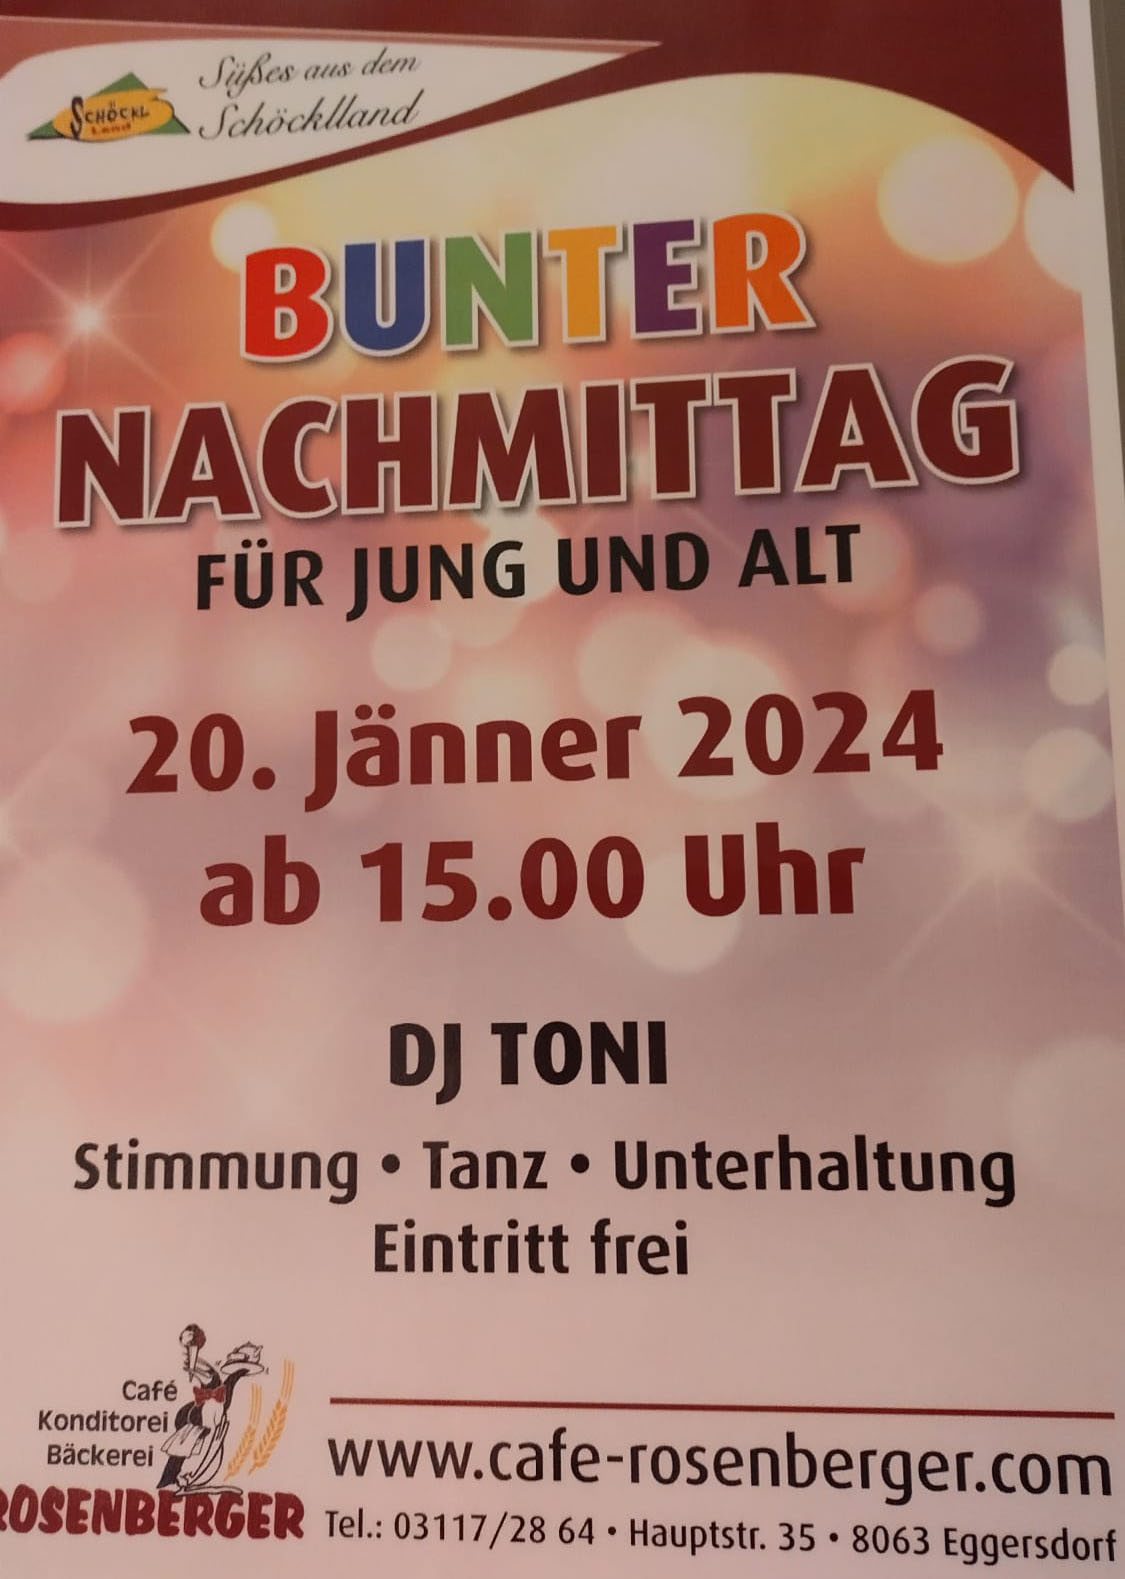 Bunter Nachmittag für Jung und Alt am 20.01.2024 - Musik mit DJ Toni, Stimmung, Tanz und Unterhaltung.